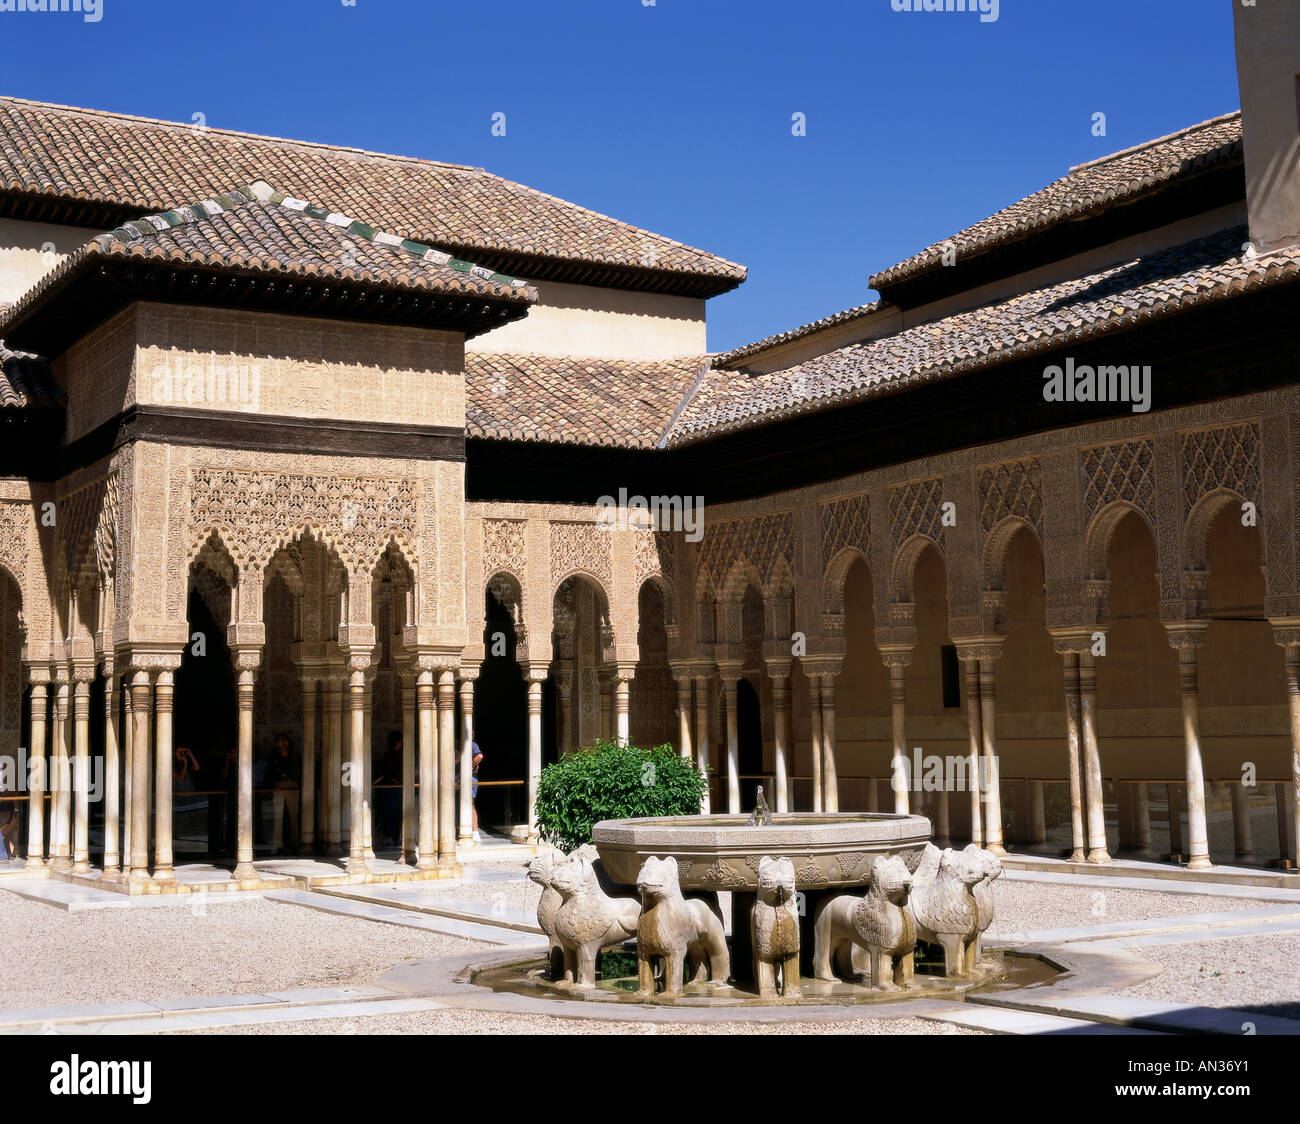 L'Alhambra / Patio des Lions (Patio de los Leones), Grenade, Andalousie, Espagne Banque D'Images